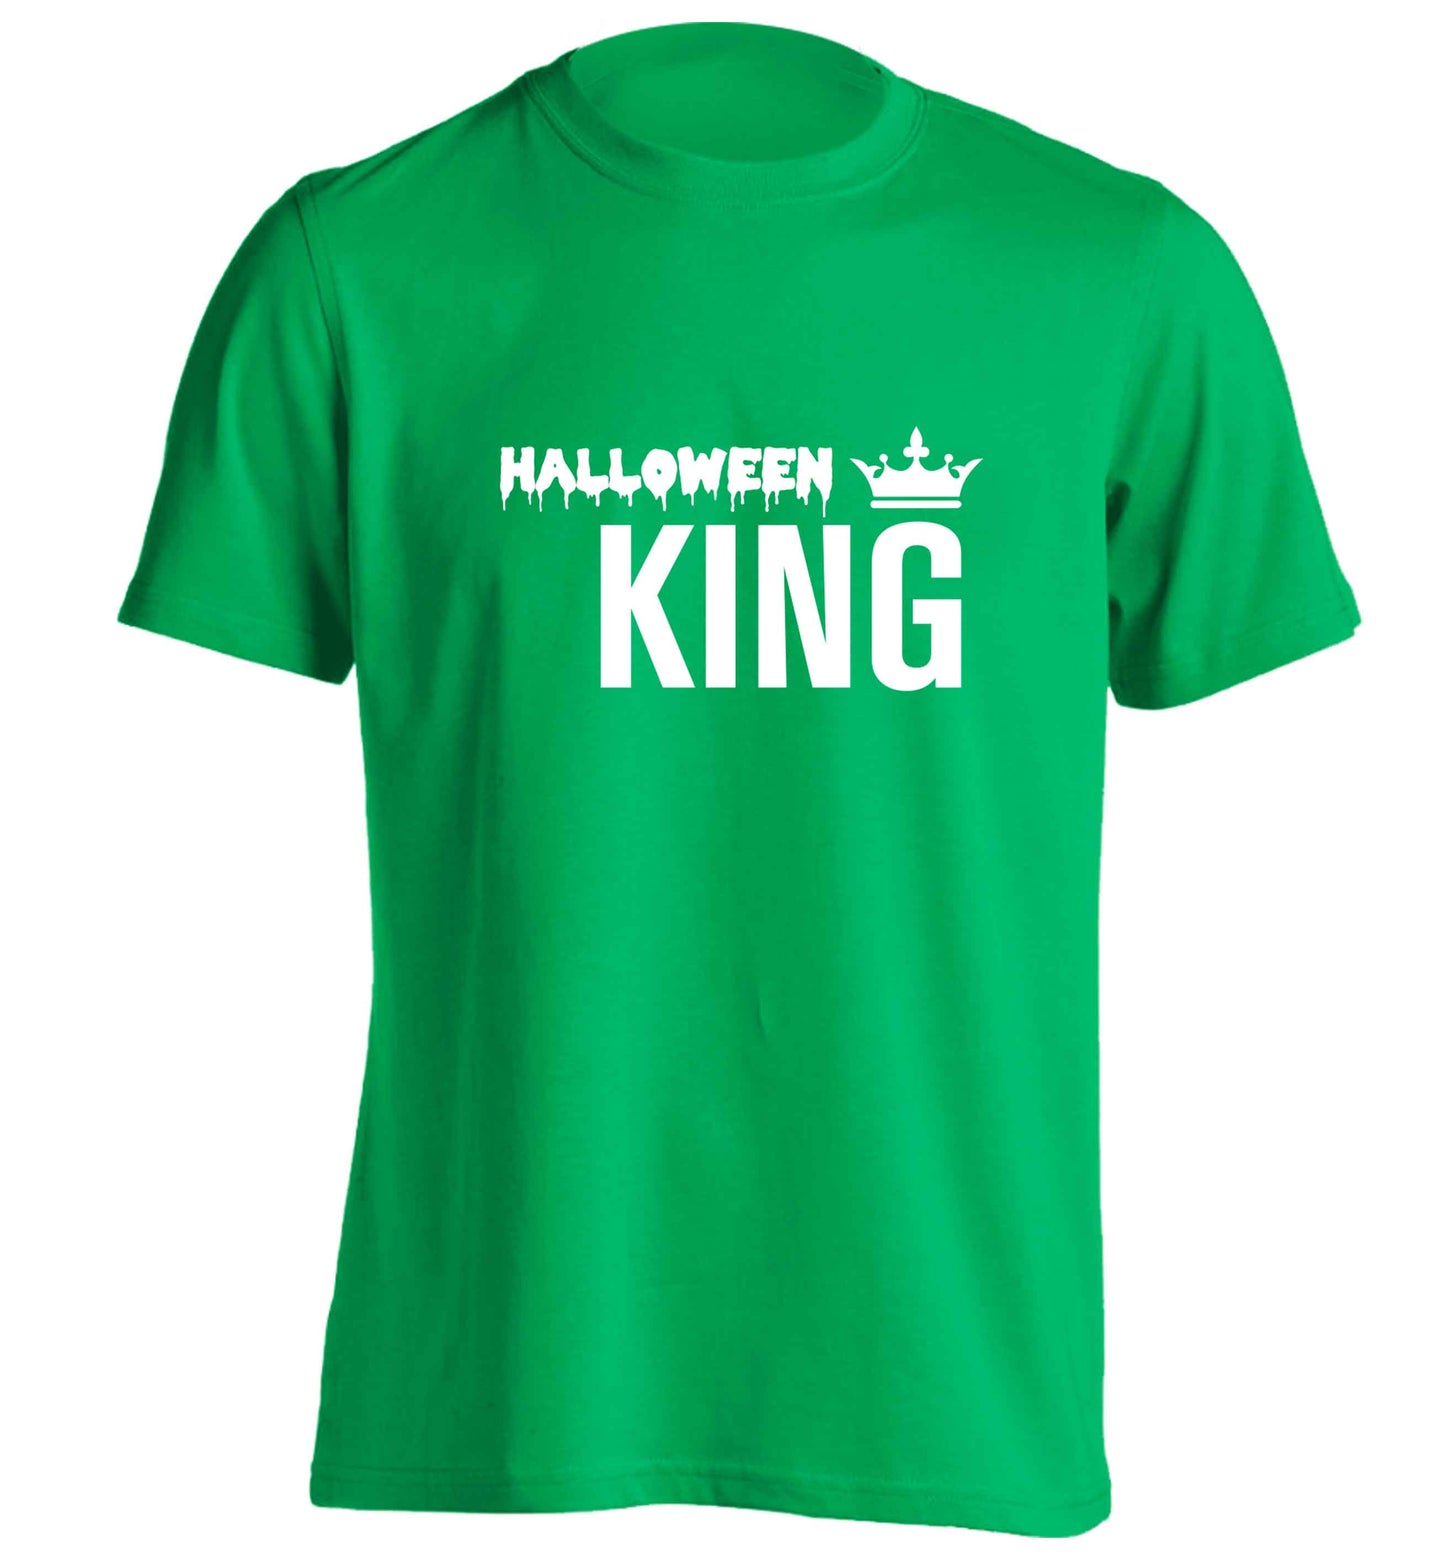 Halloween king adults unisex green Tshirt 2XL